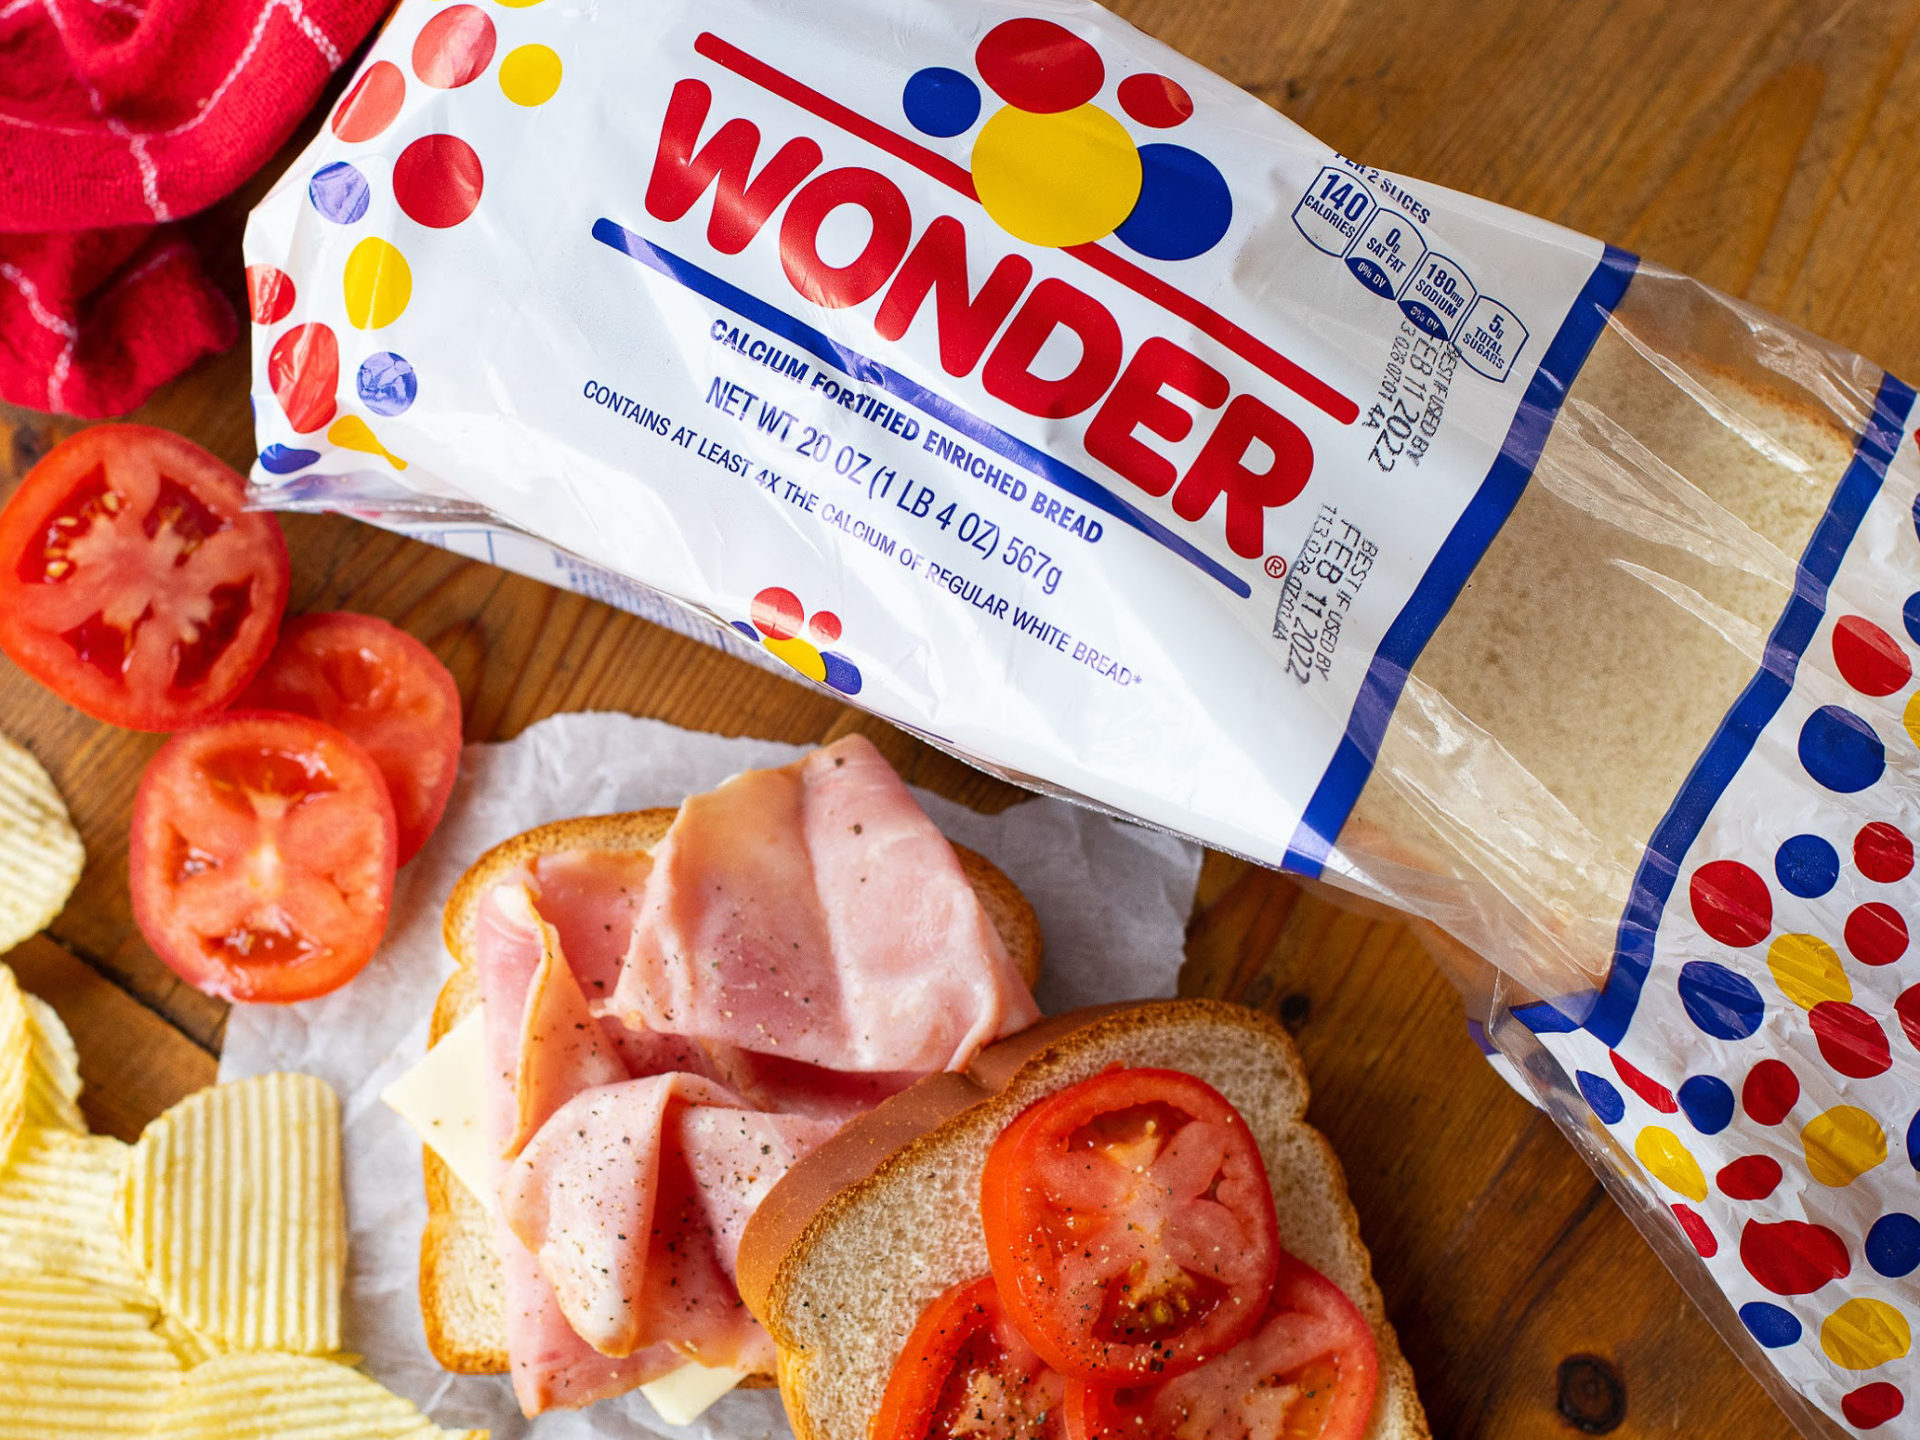 Wonder Bread Just $1.94 At Kroger